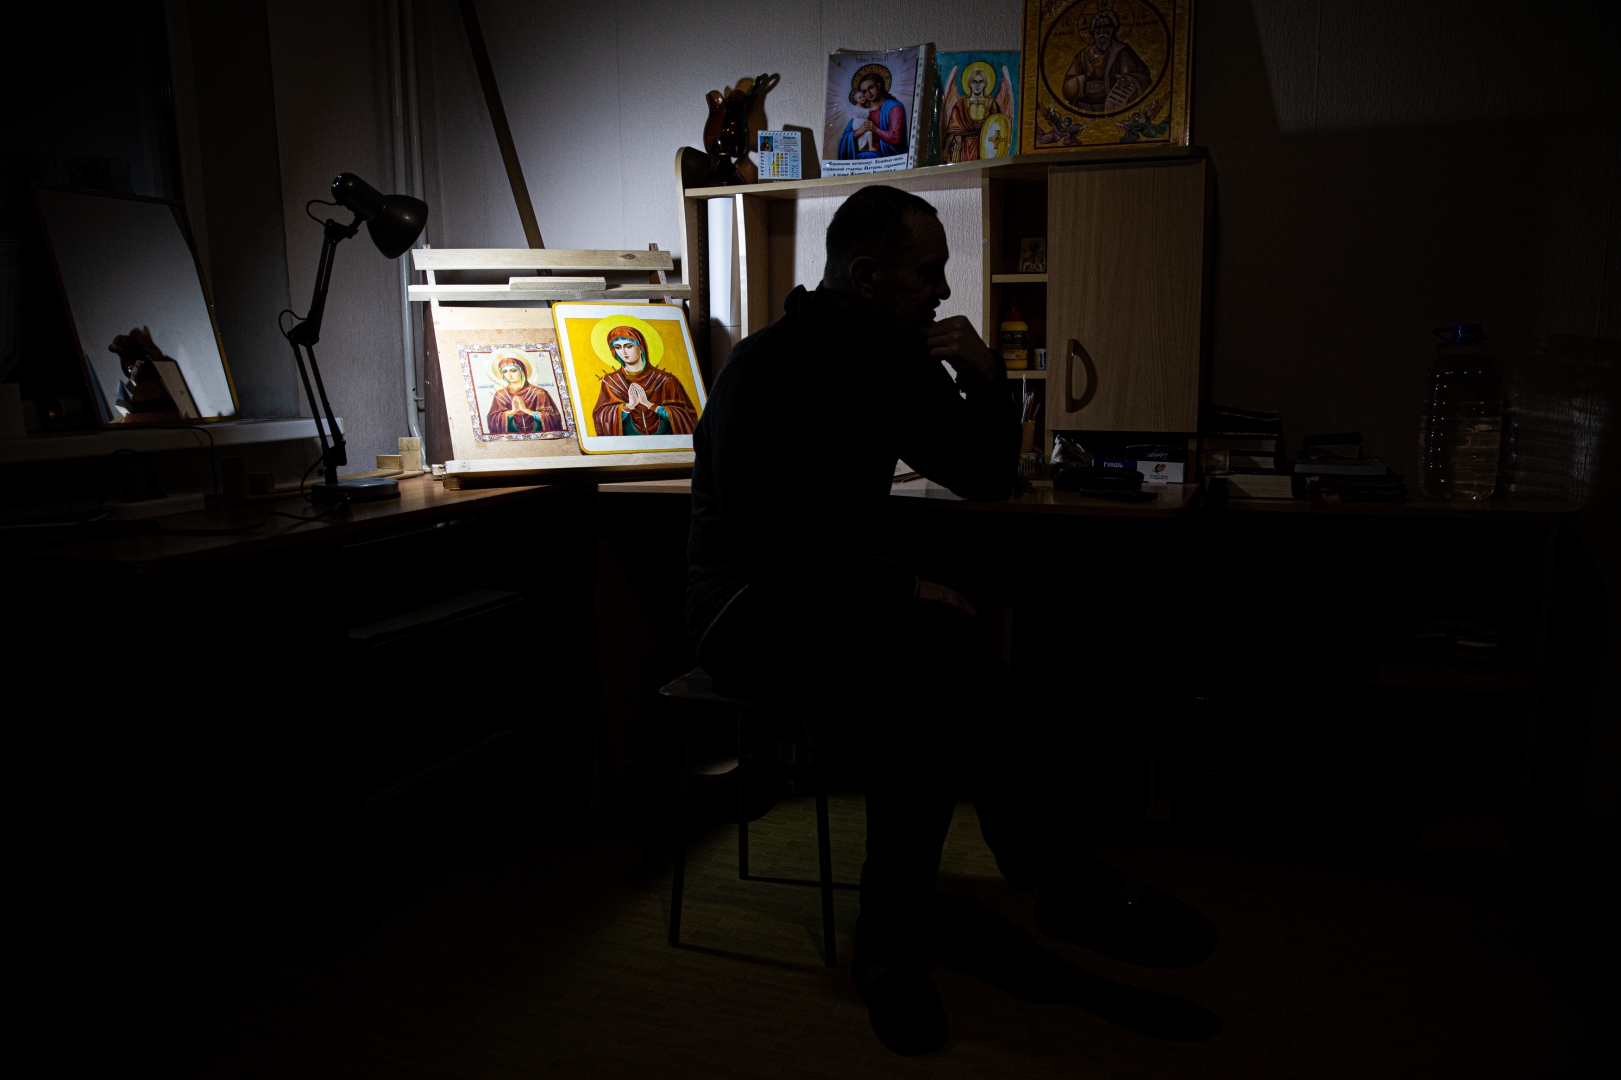 Иван Сергеевич (62 года) за работой. Во время отбытия последнего наказания открыл в себе художественный талант и начал писать иконы в тюремном храме